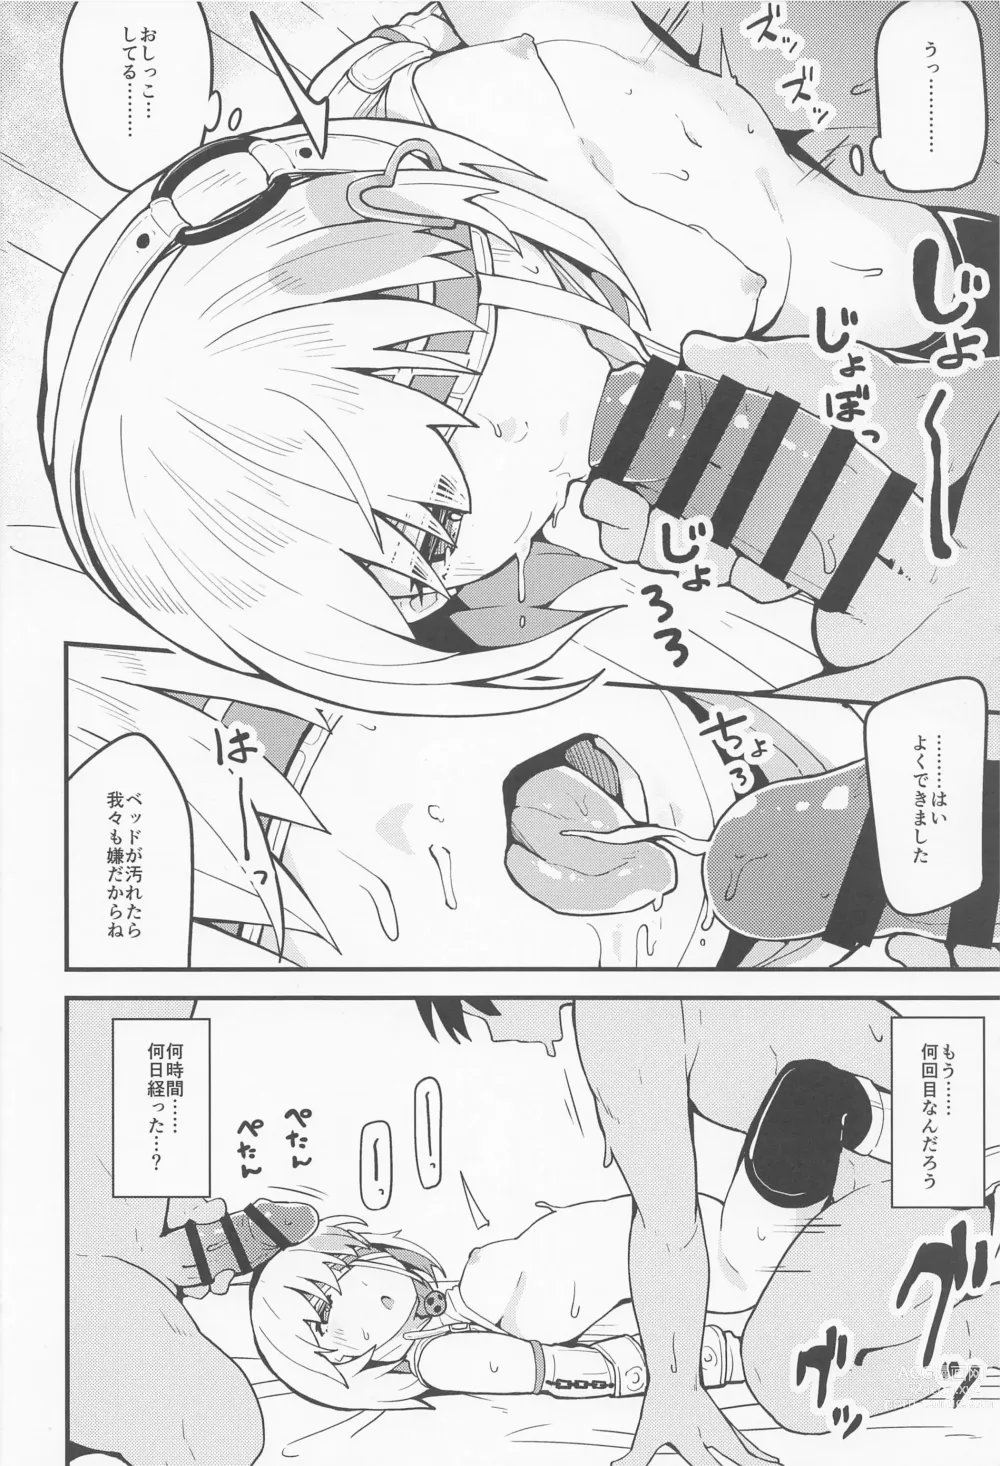 Page 19 of doujinshi Haru Uri Porno